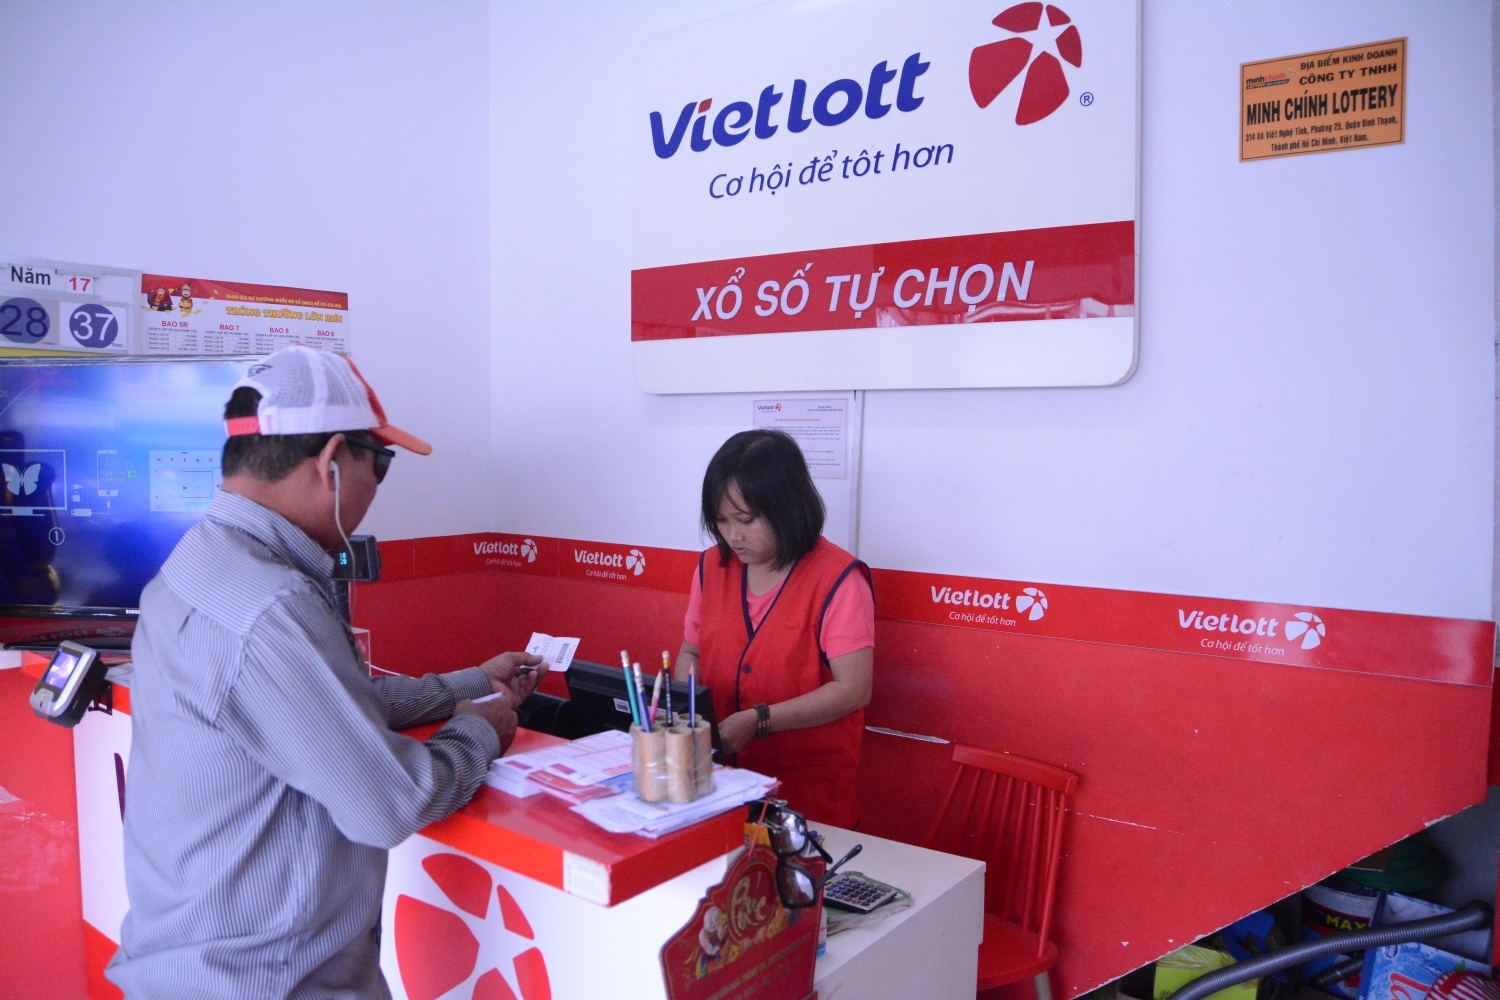 Hệ thống xổ số điện toán Minh Chính Lottery